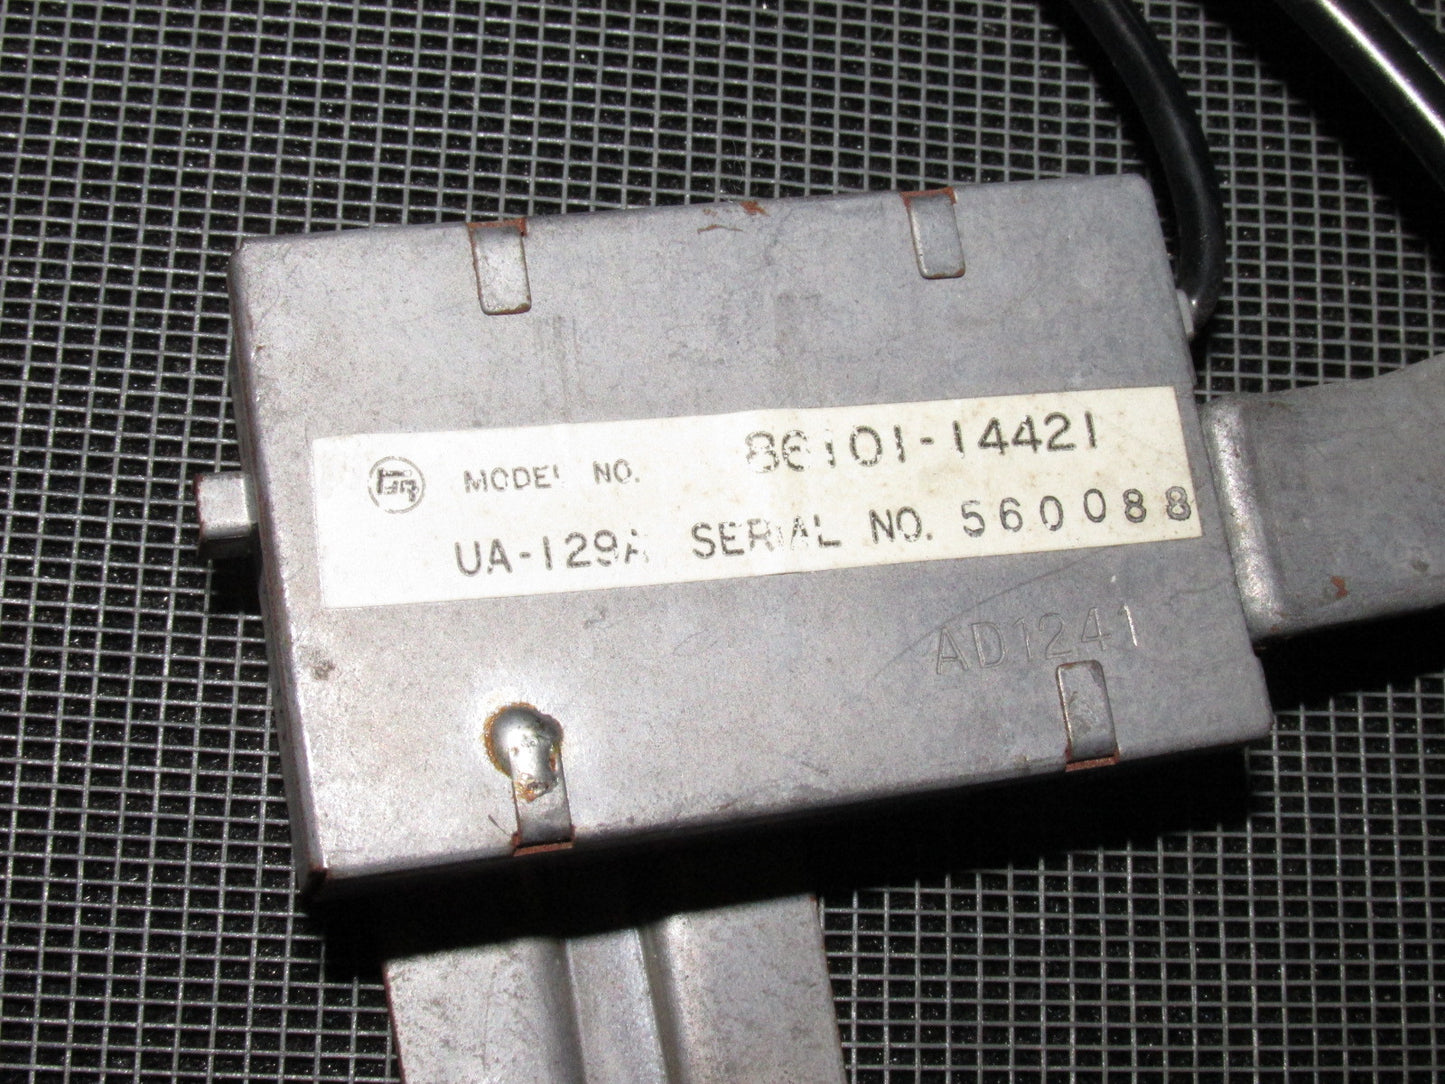 89 90 91 92 Toyota Supra OEM Rear Window Defroster Resistor Module - 86101-14421